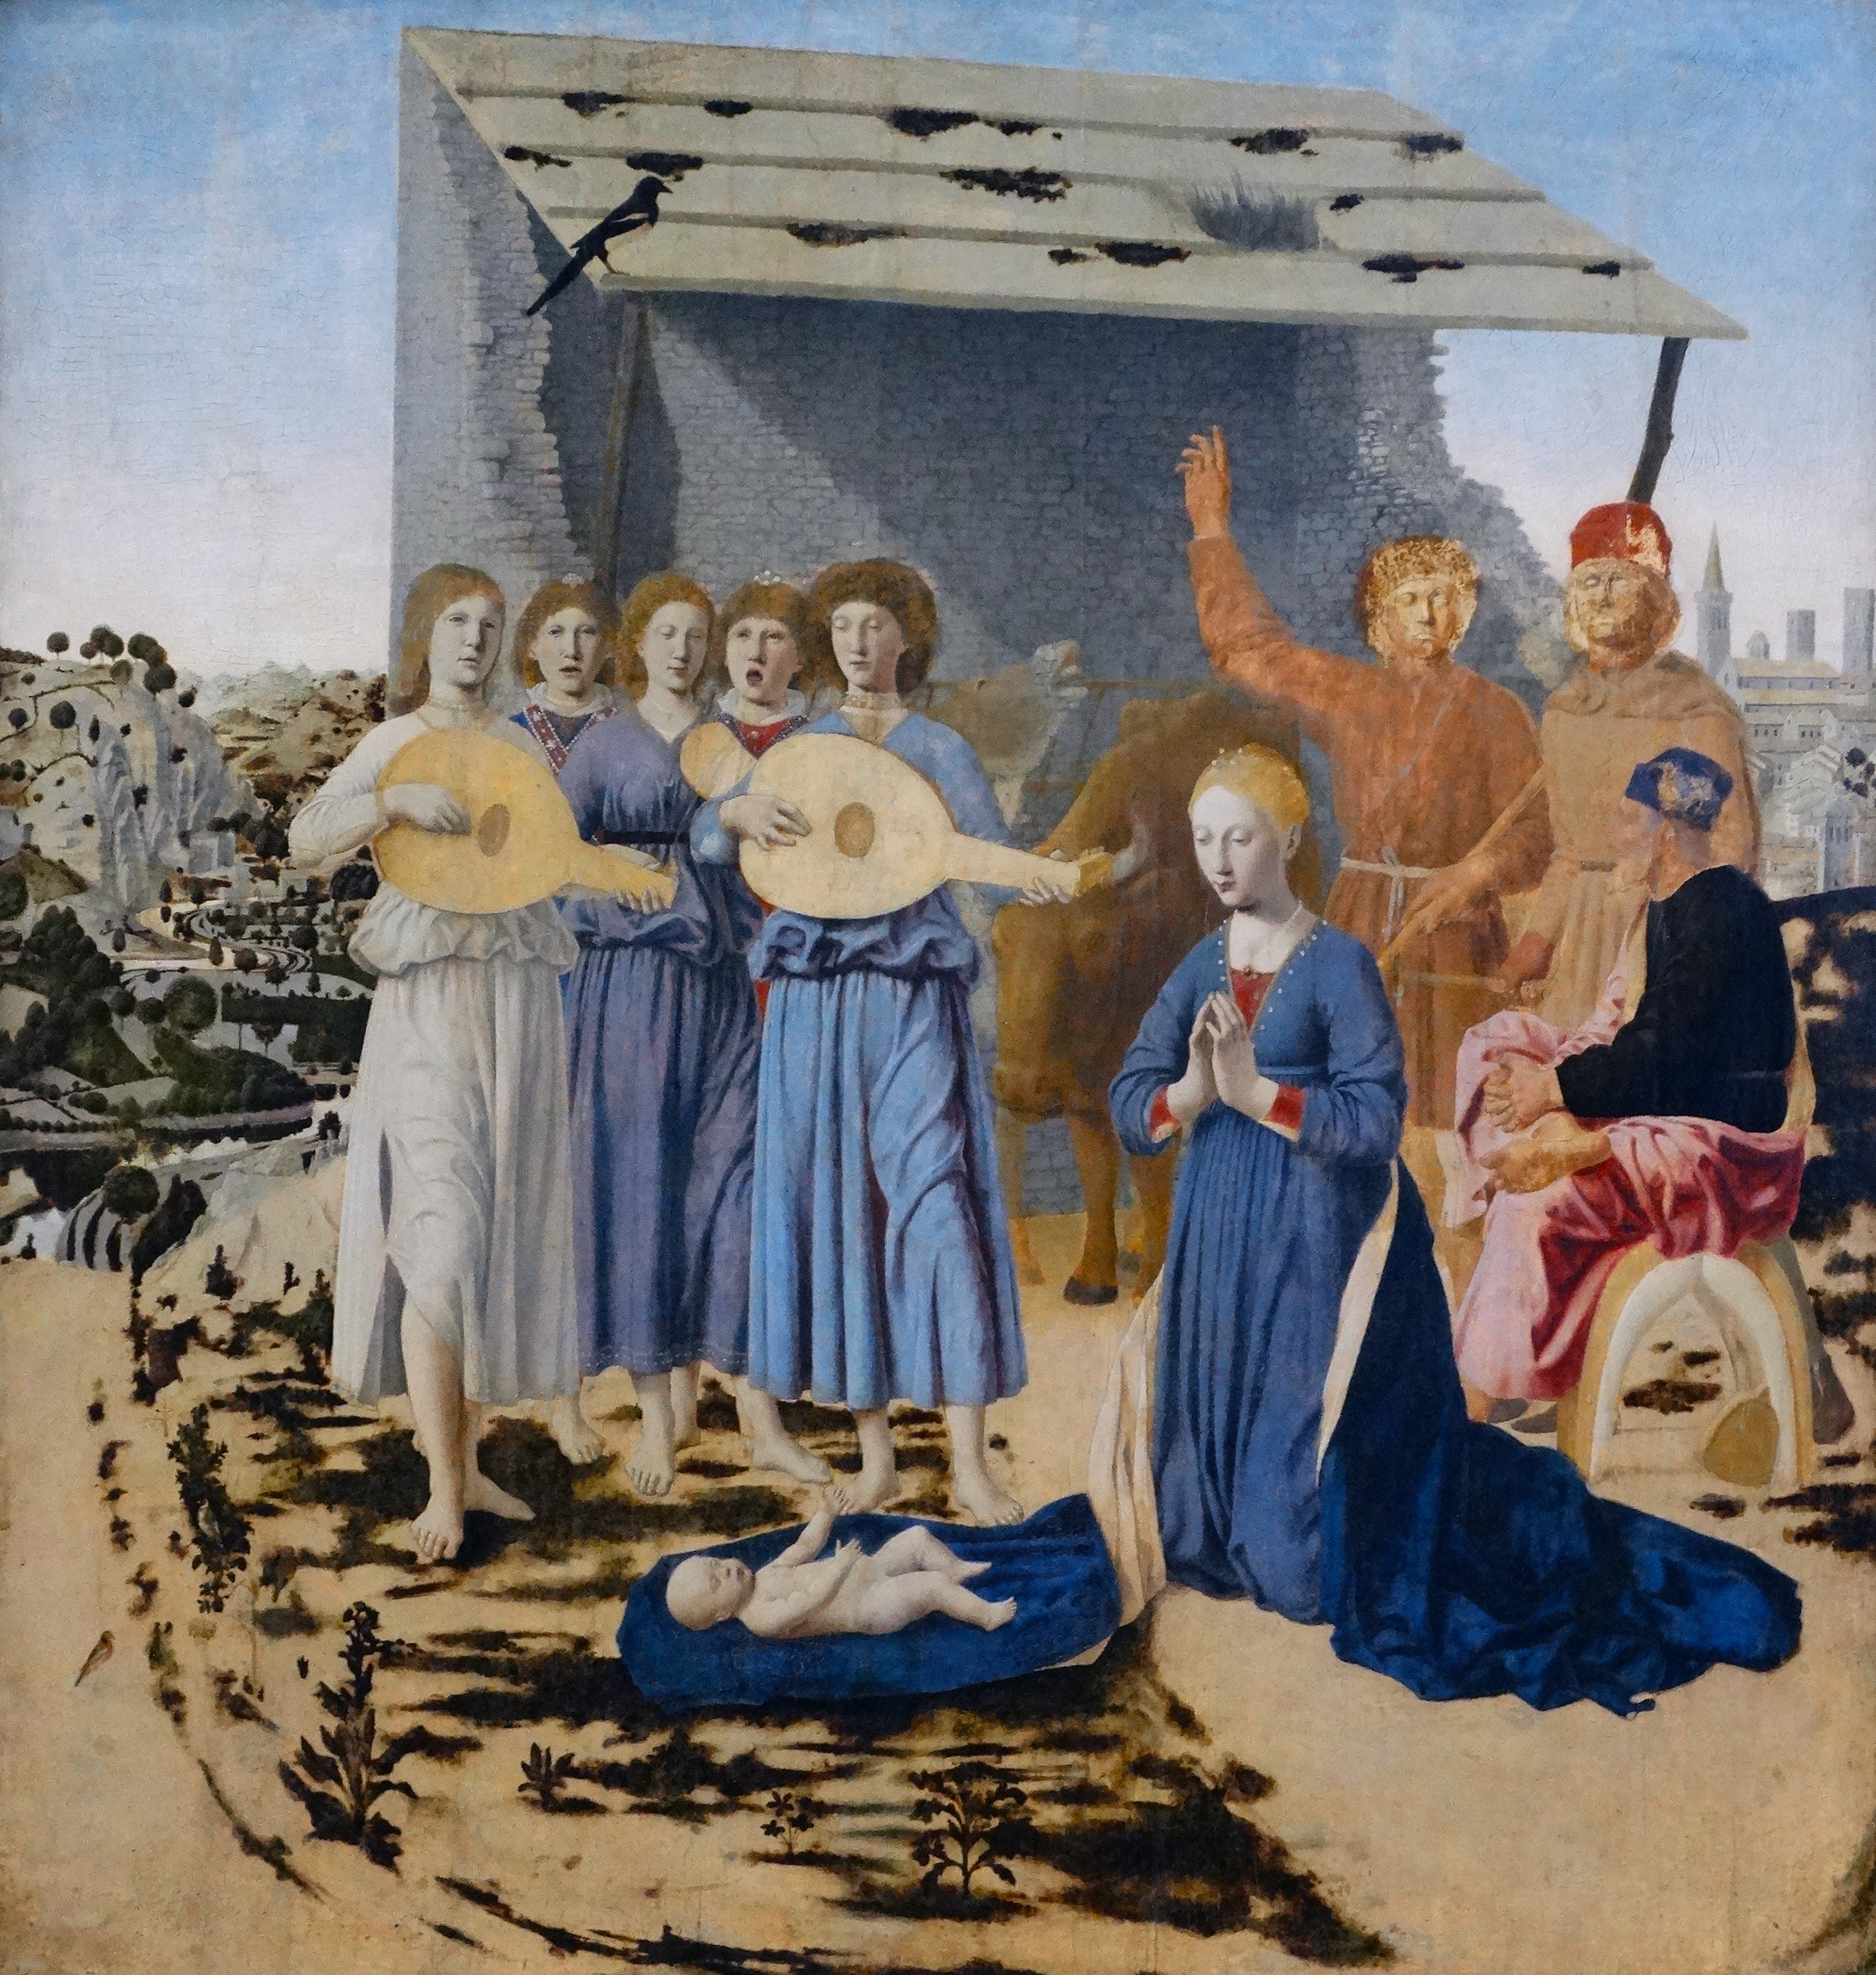 Natività, Piero della Francesca, 1470-1475, olio su tavola, 124,4x122,6 cm. National Gallery, Londra. Credito: Photo12/Ann Ronan Picture Library/contrasto